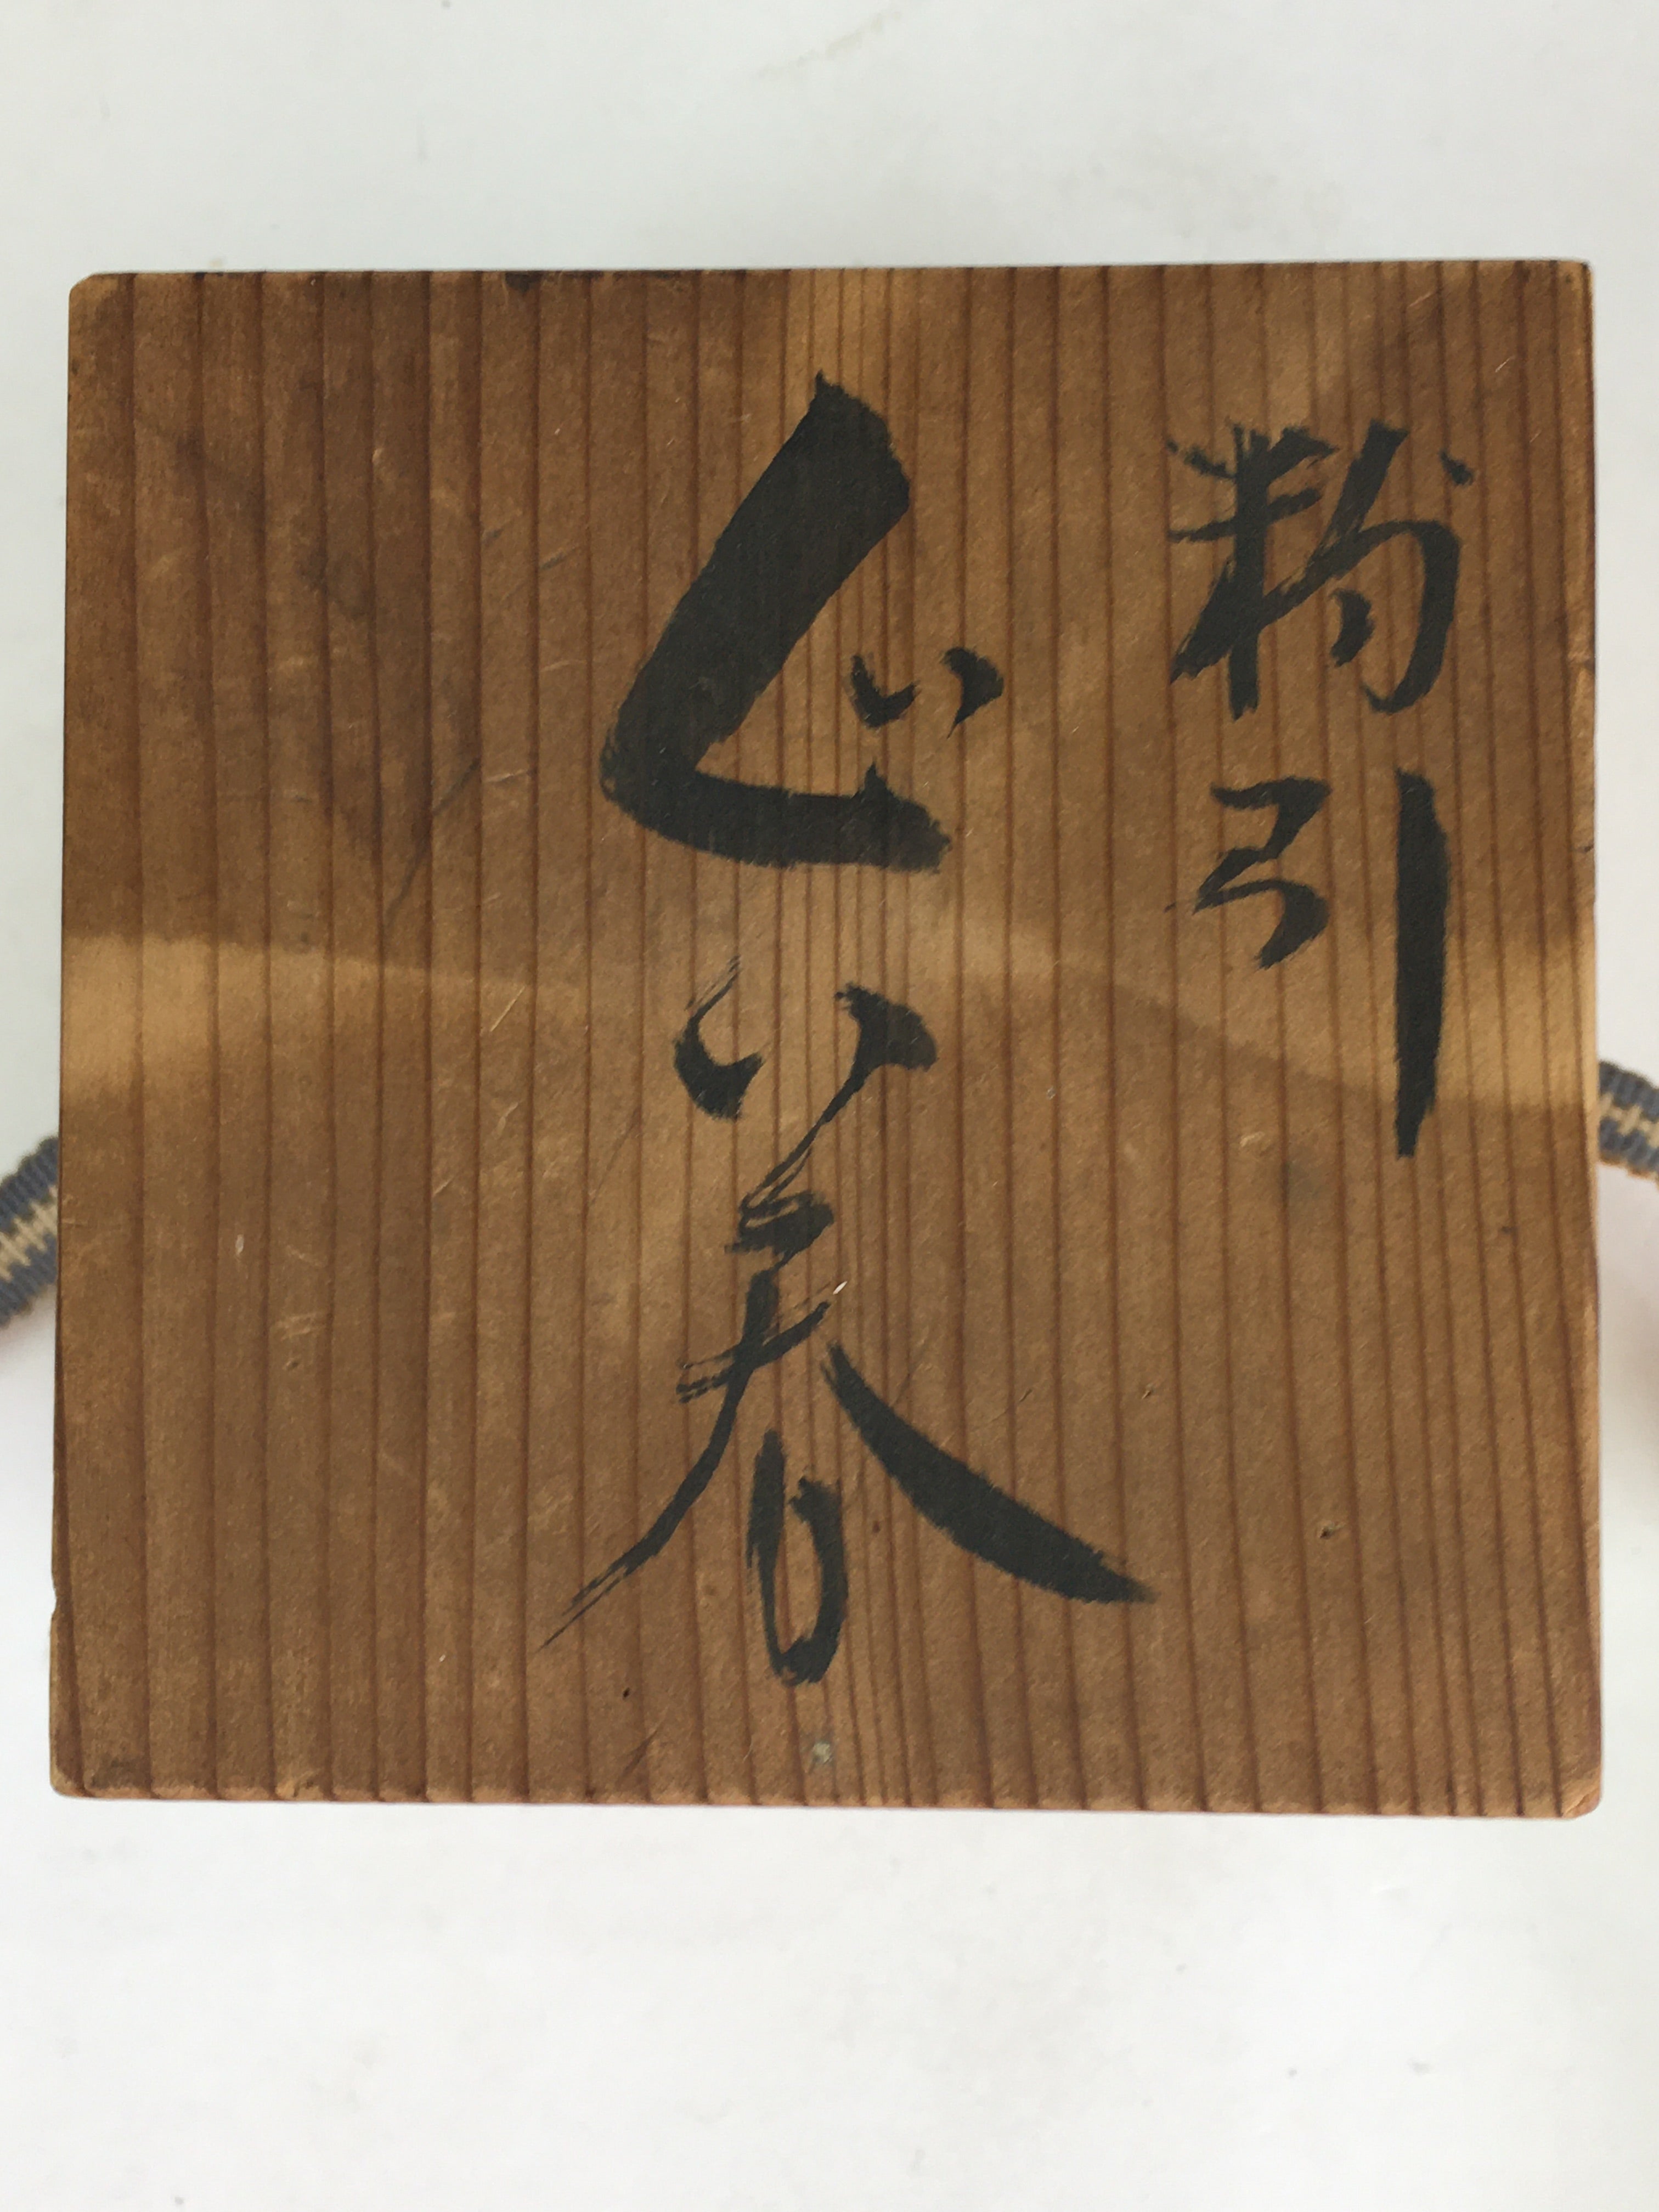 Japanese Wooden Storage Box Vtg Pottery Hako Inside 7.5x7.5x6.8cm WB929